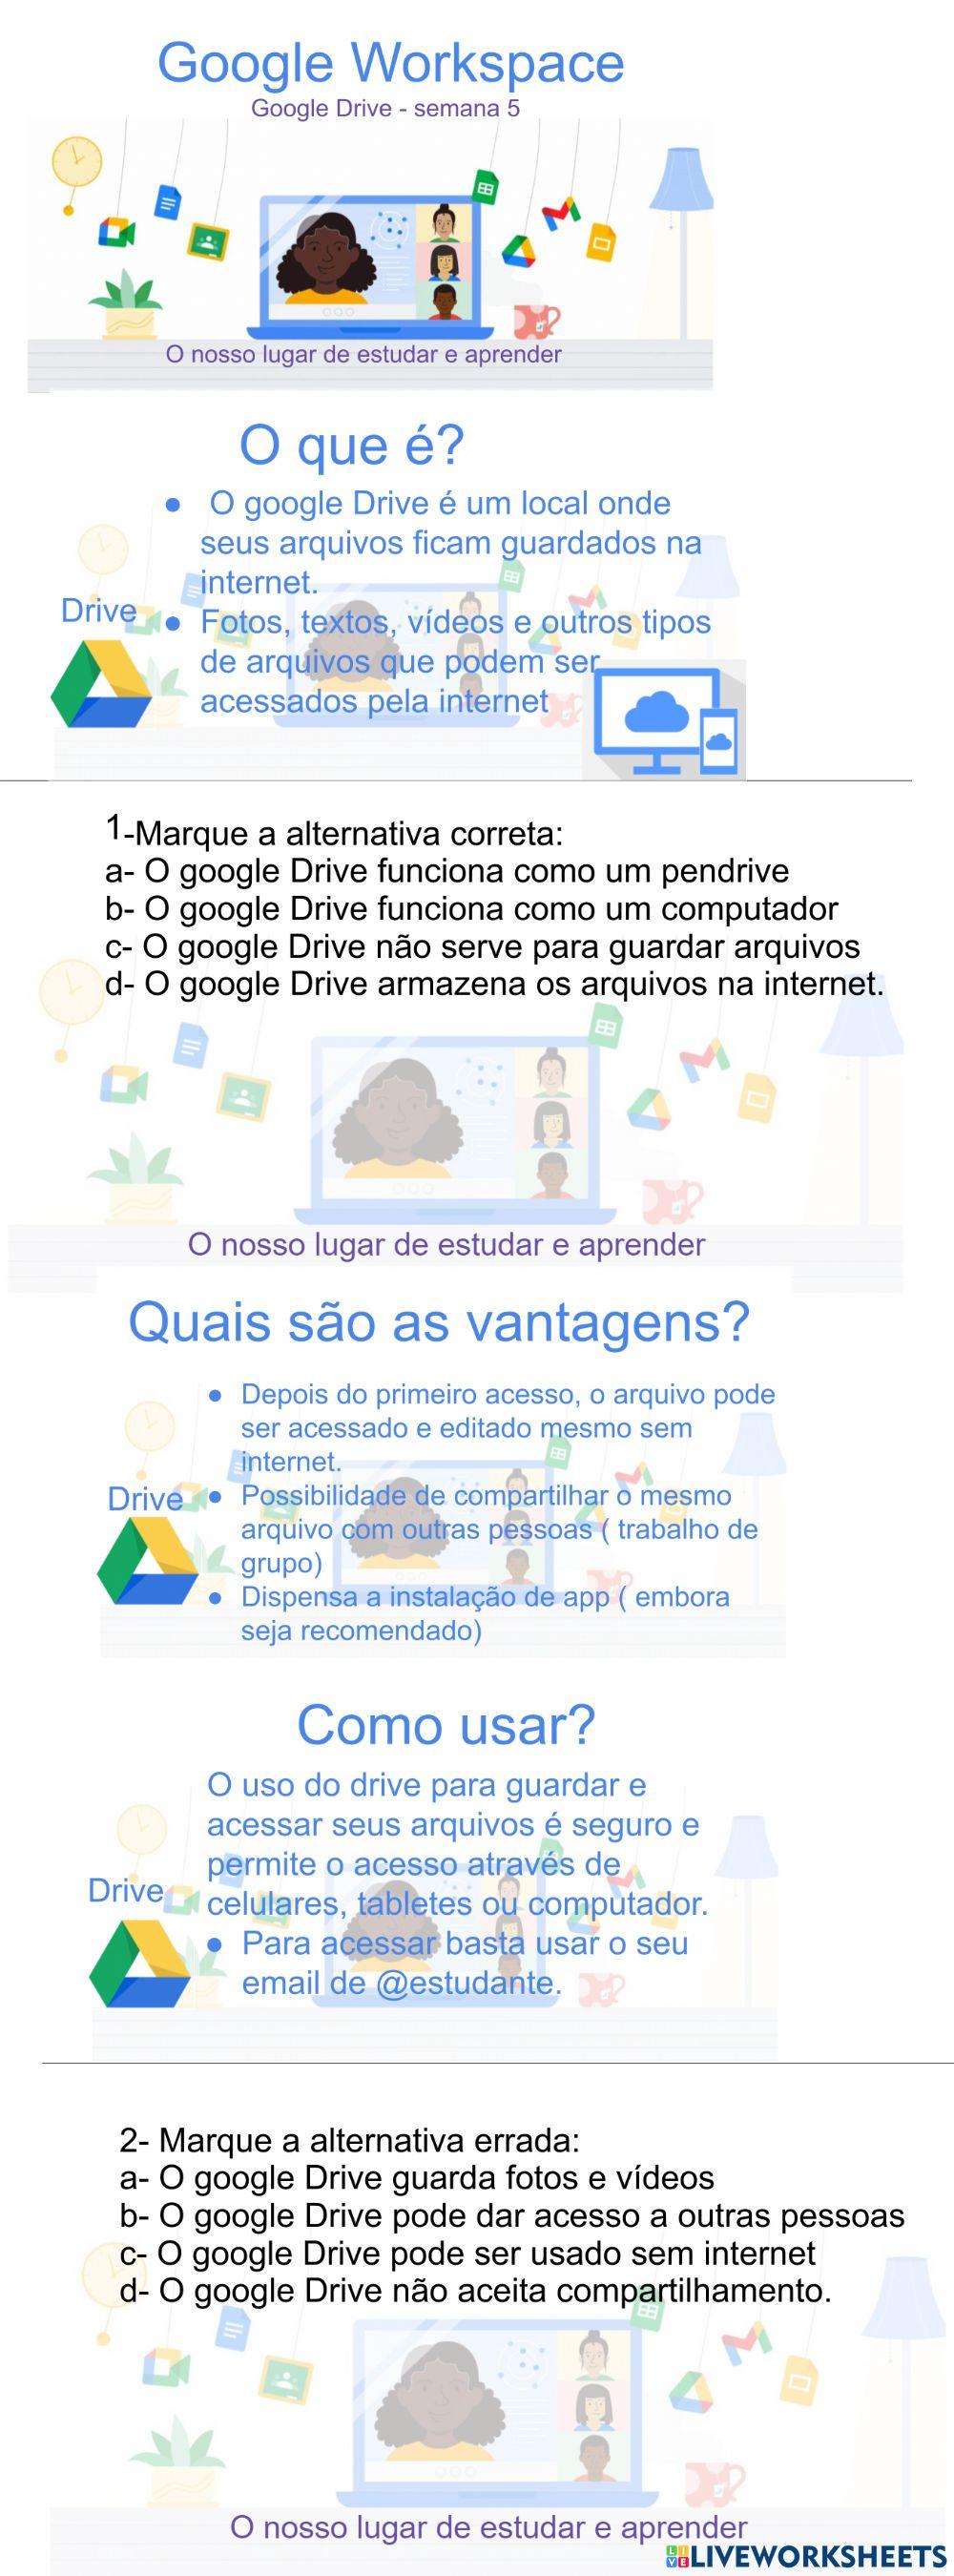 Descubra 5 vantagens em usar o Google Drive